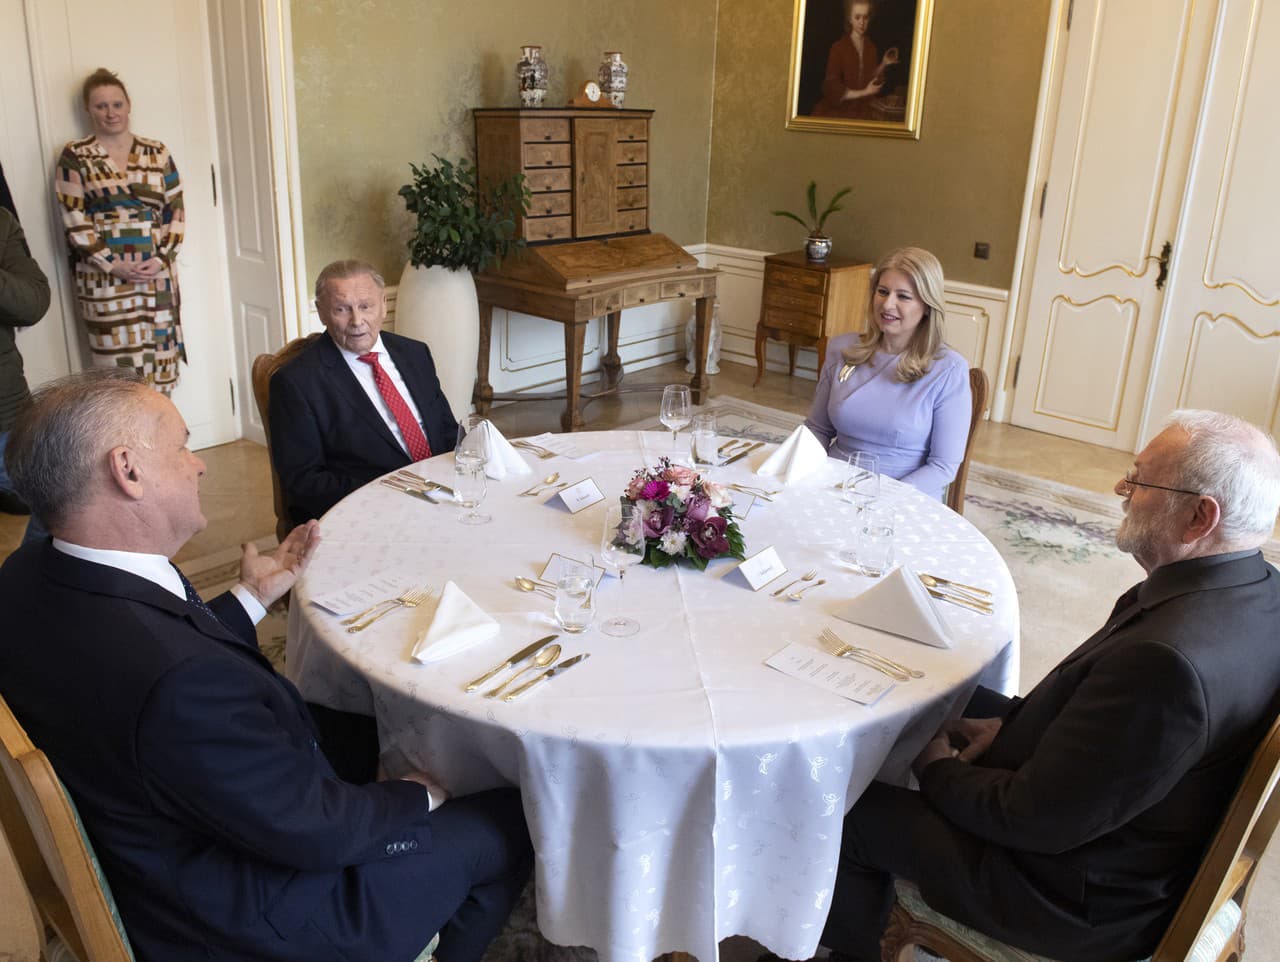 Prezidenti SR sa stretli na spoločnom obede